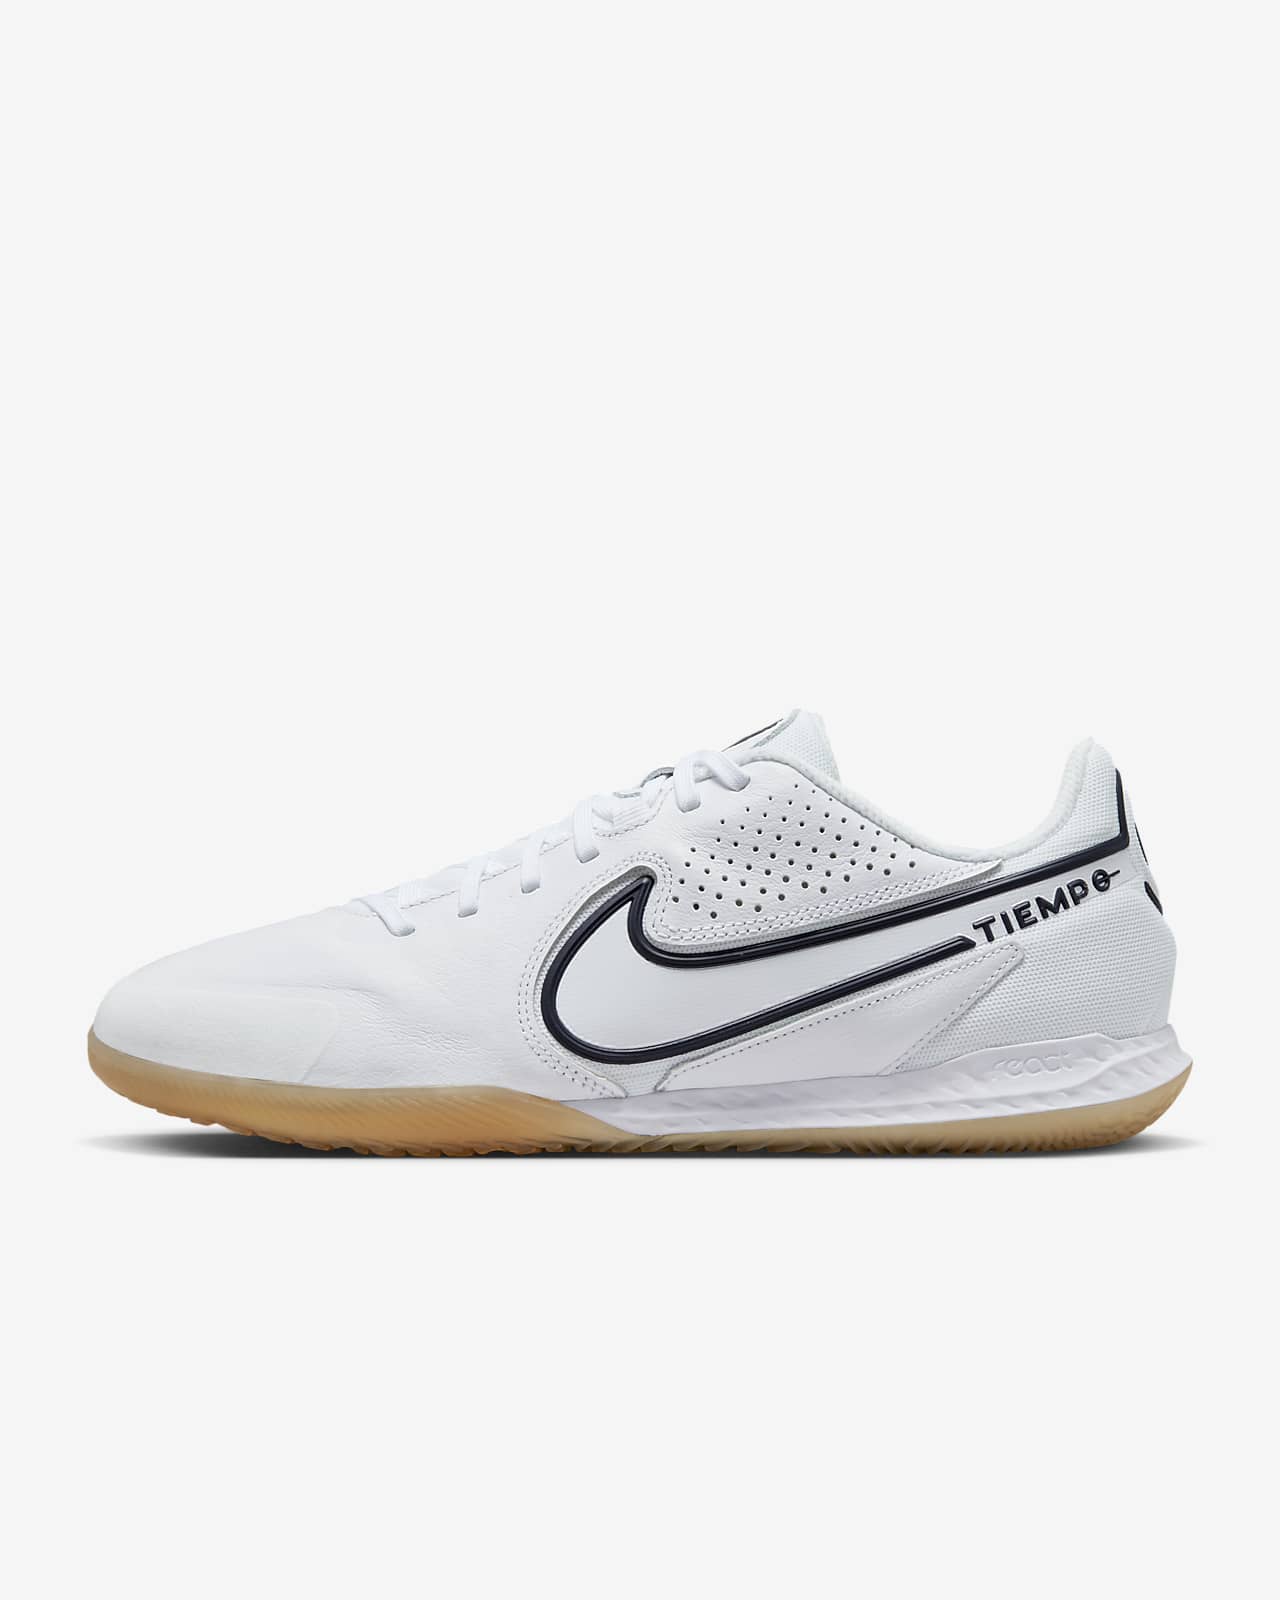 Nike Legend 9 IC Indoor/Court Soccer Shoe.